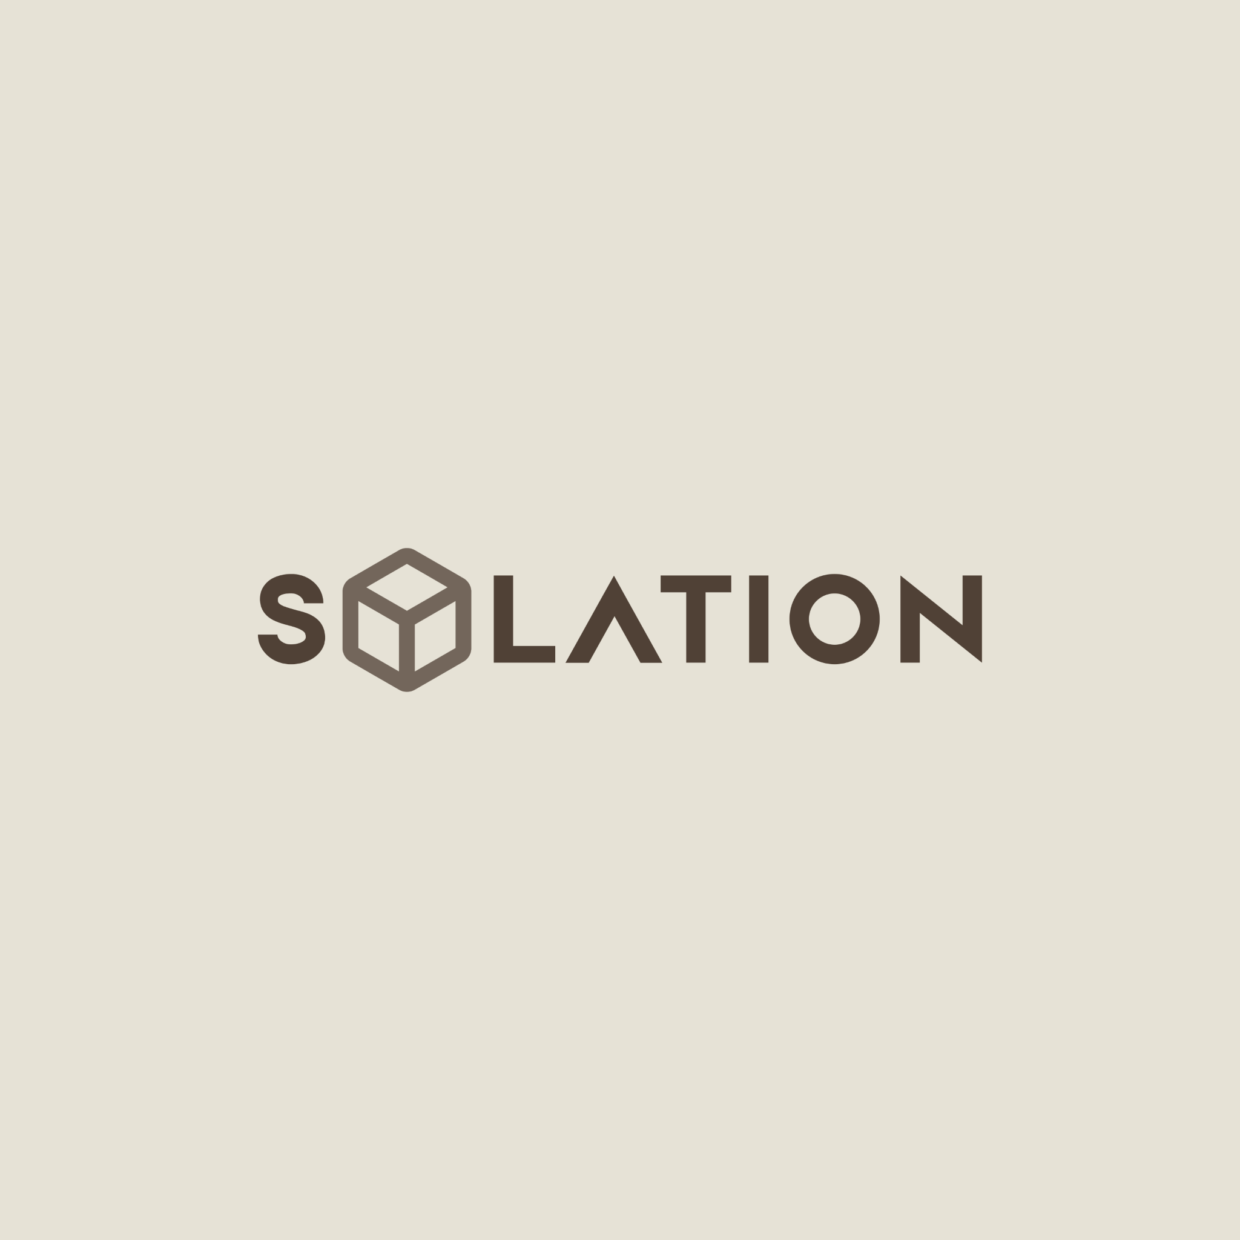 Solation main logo 002